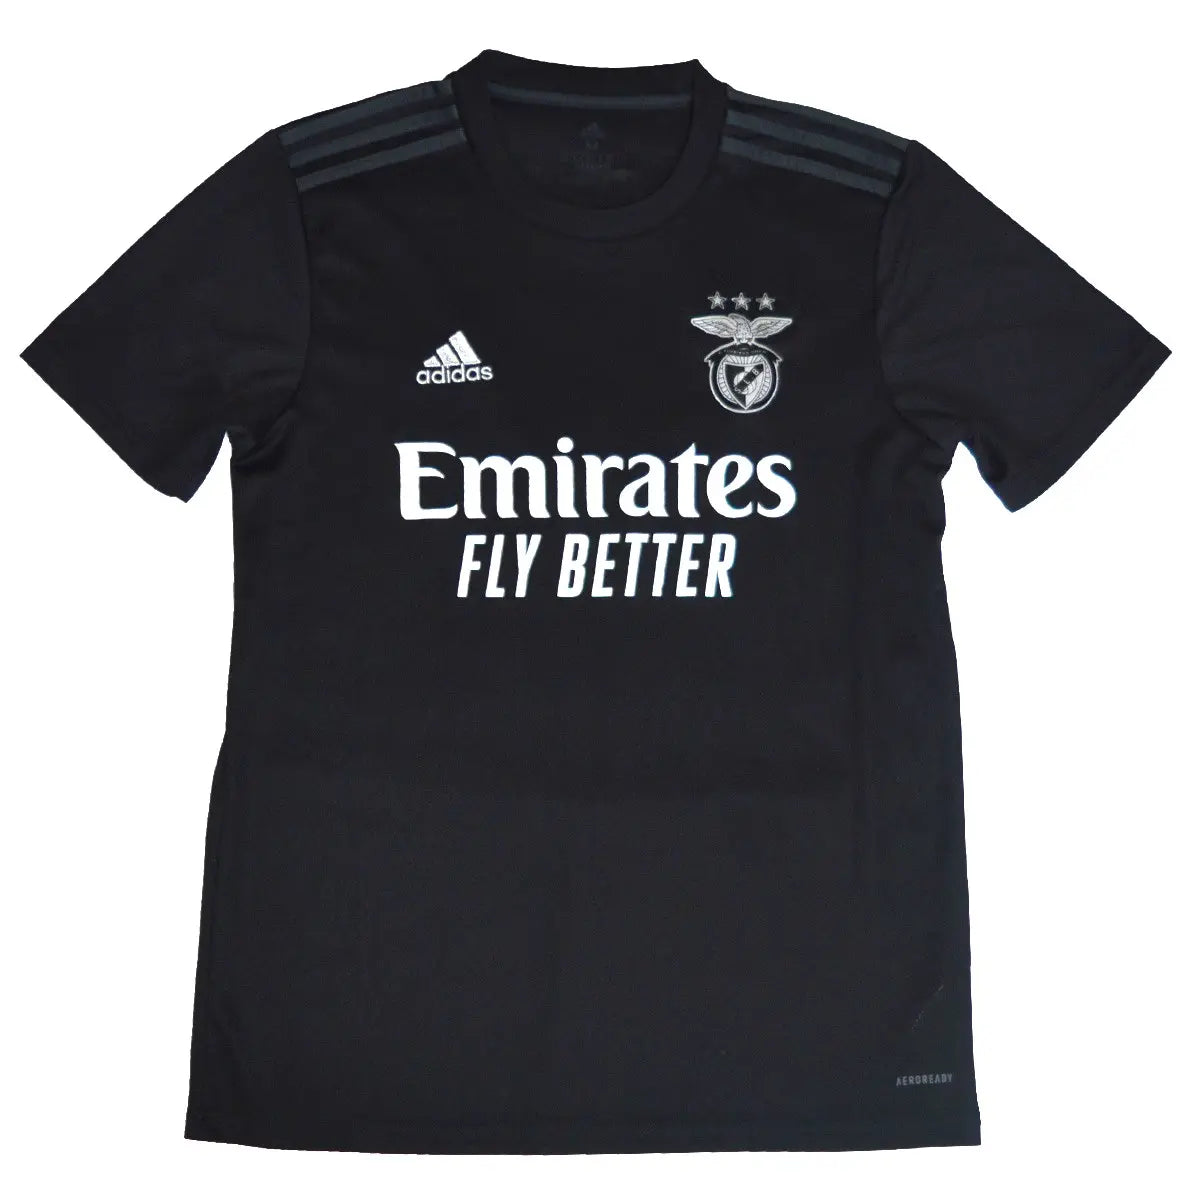 Maillot retro/vintage authentique extérieur noir du benfica 2020-2021 avec l'équipementier adidas et le sponsor emirates fly better